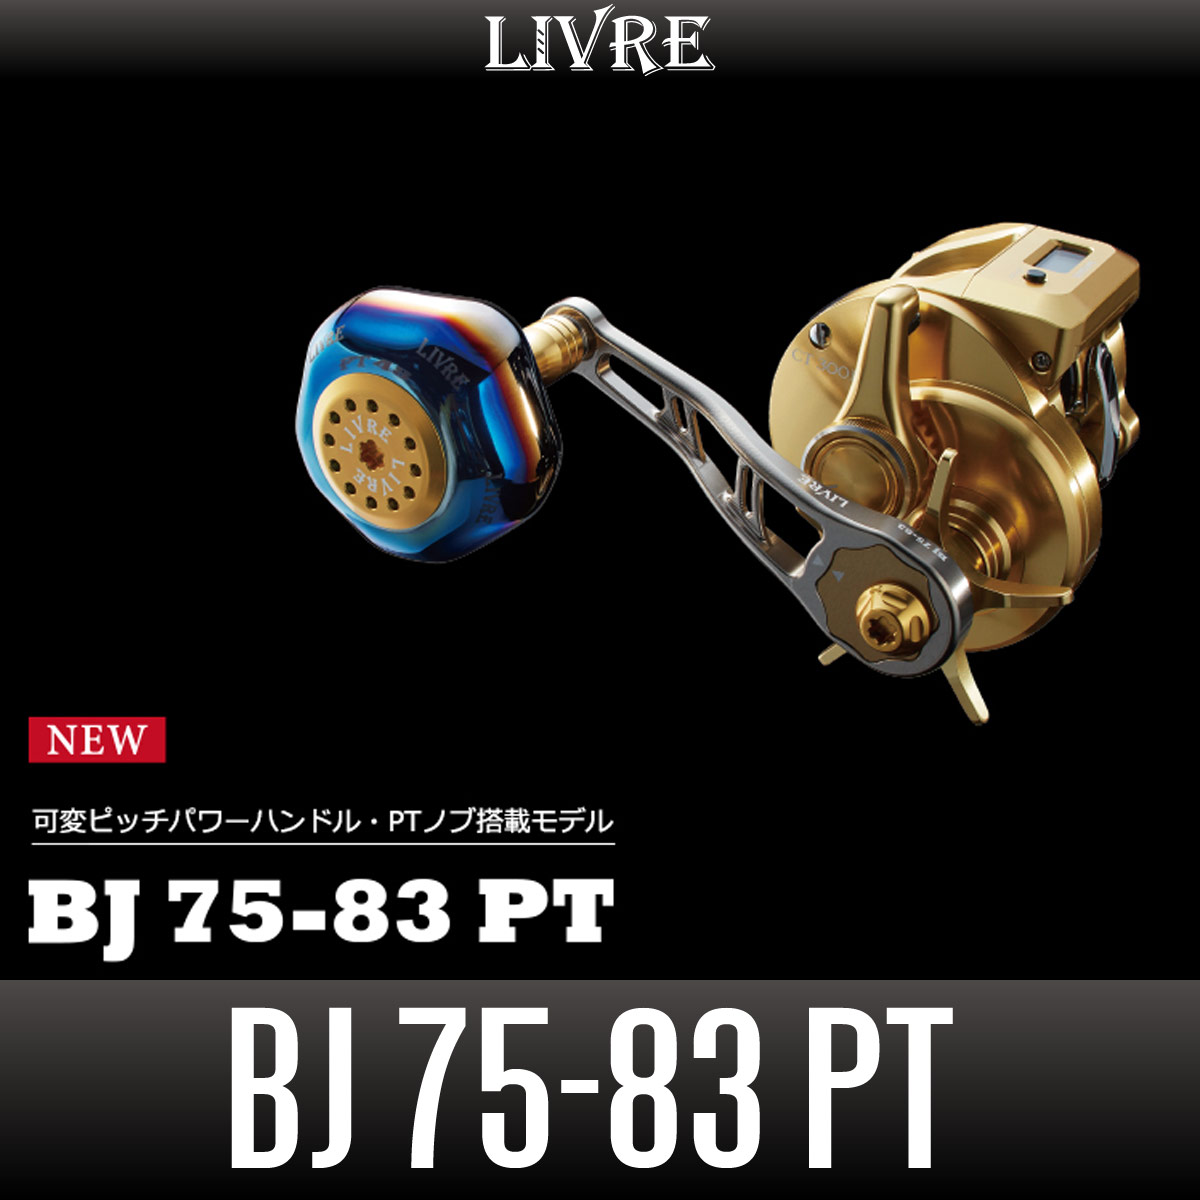 激安特価 リブレ(LIVRE) 10427 BJ 75-83PT シマノダイワ 左 ガンメタプレート レッド